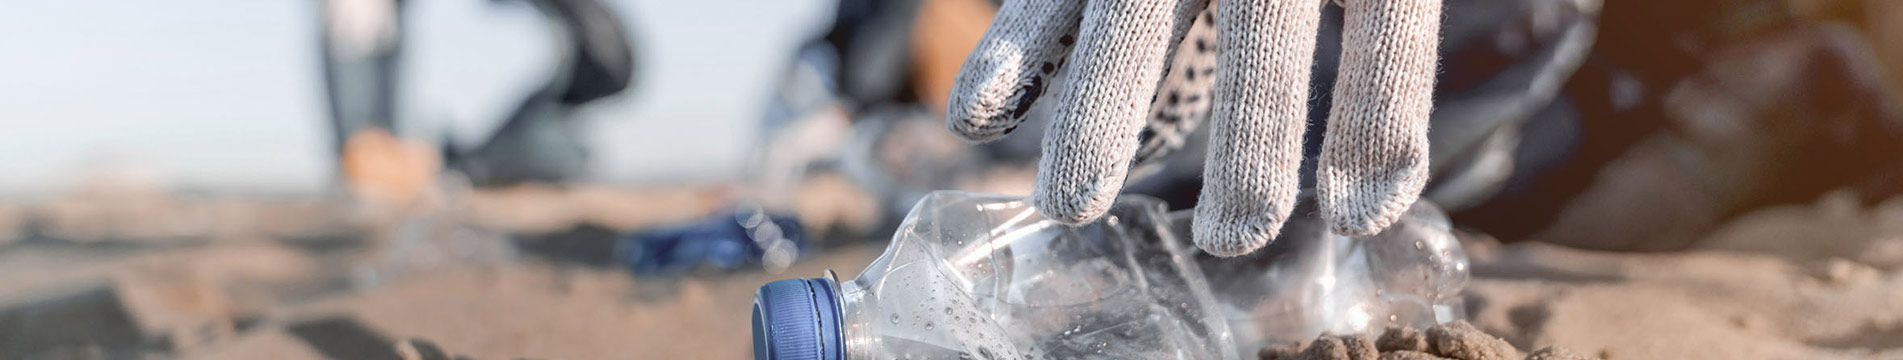 Hand, die eine weggeworfene Plastikflasche aufhebt